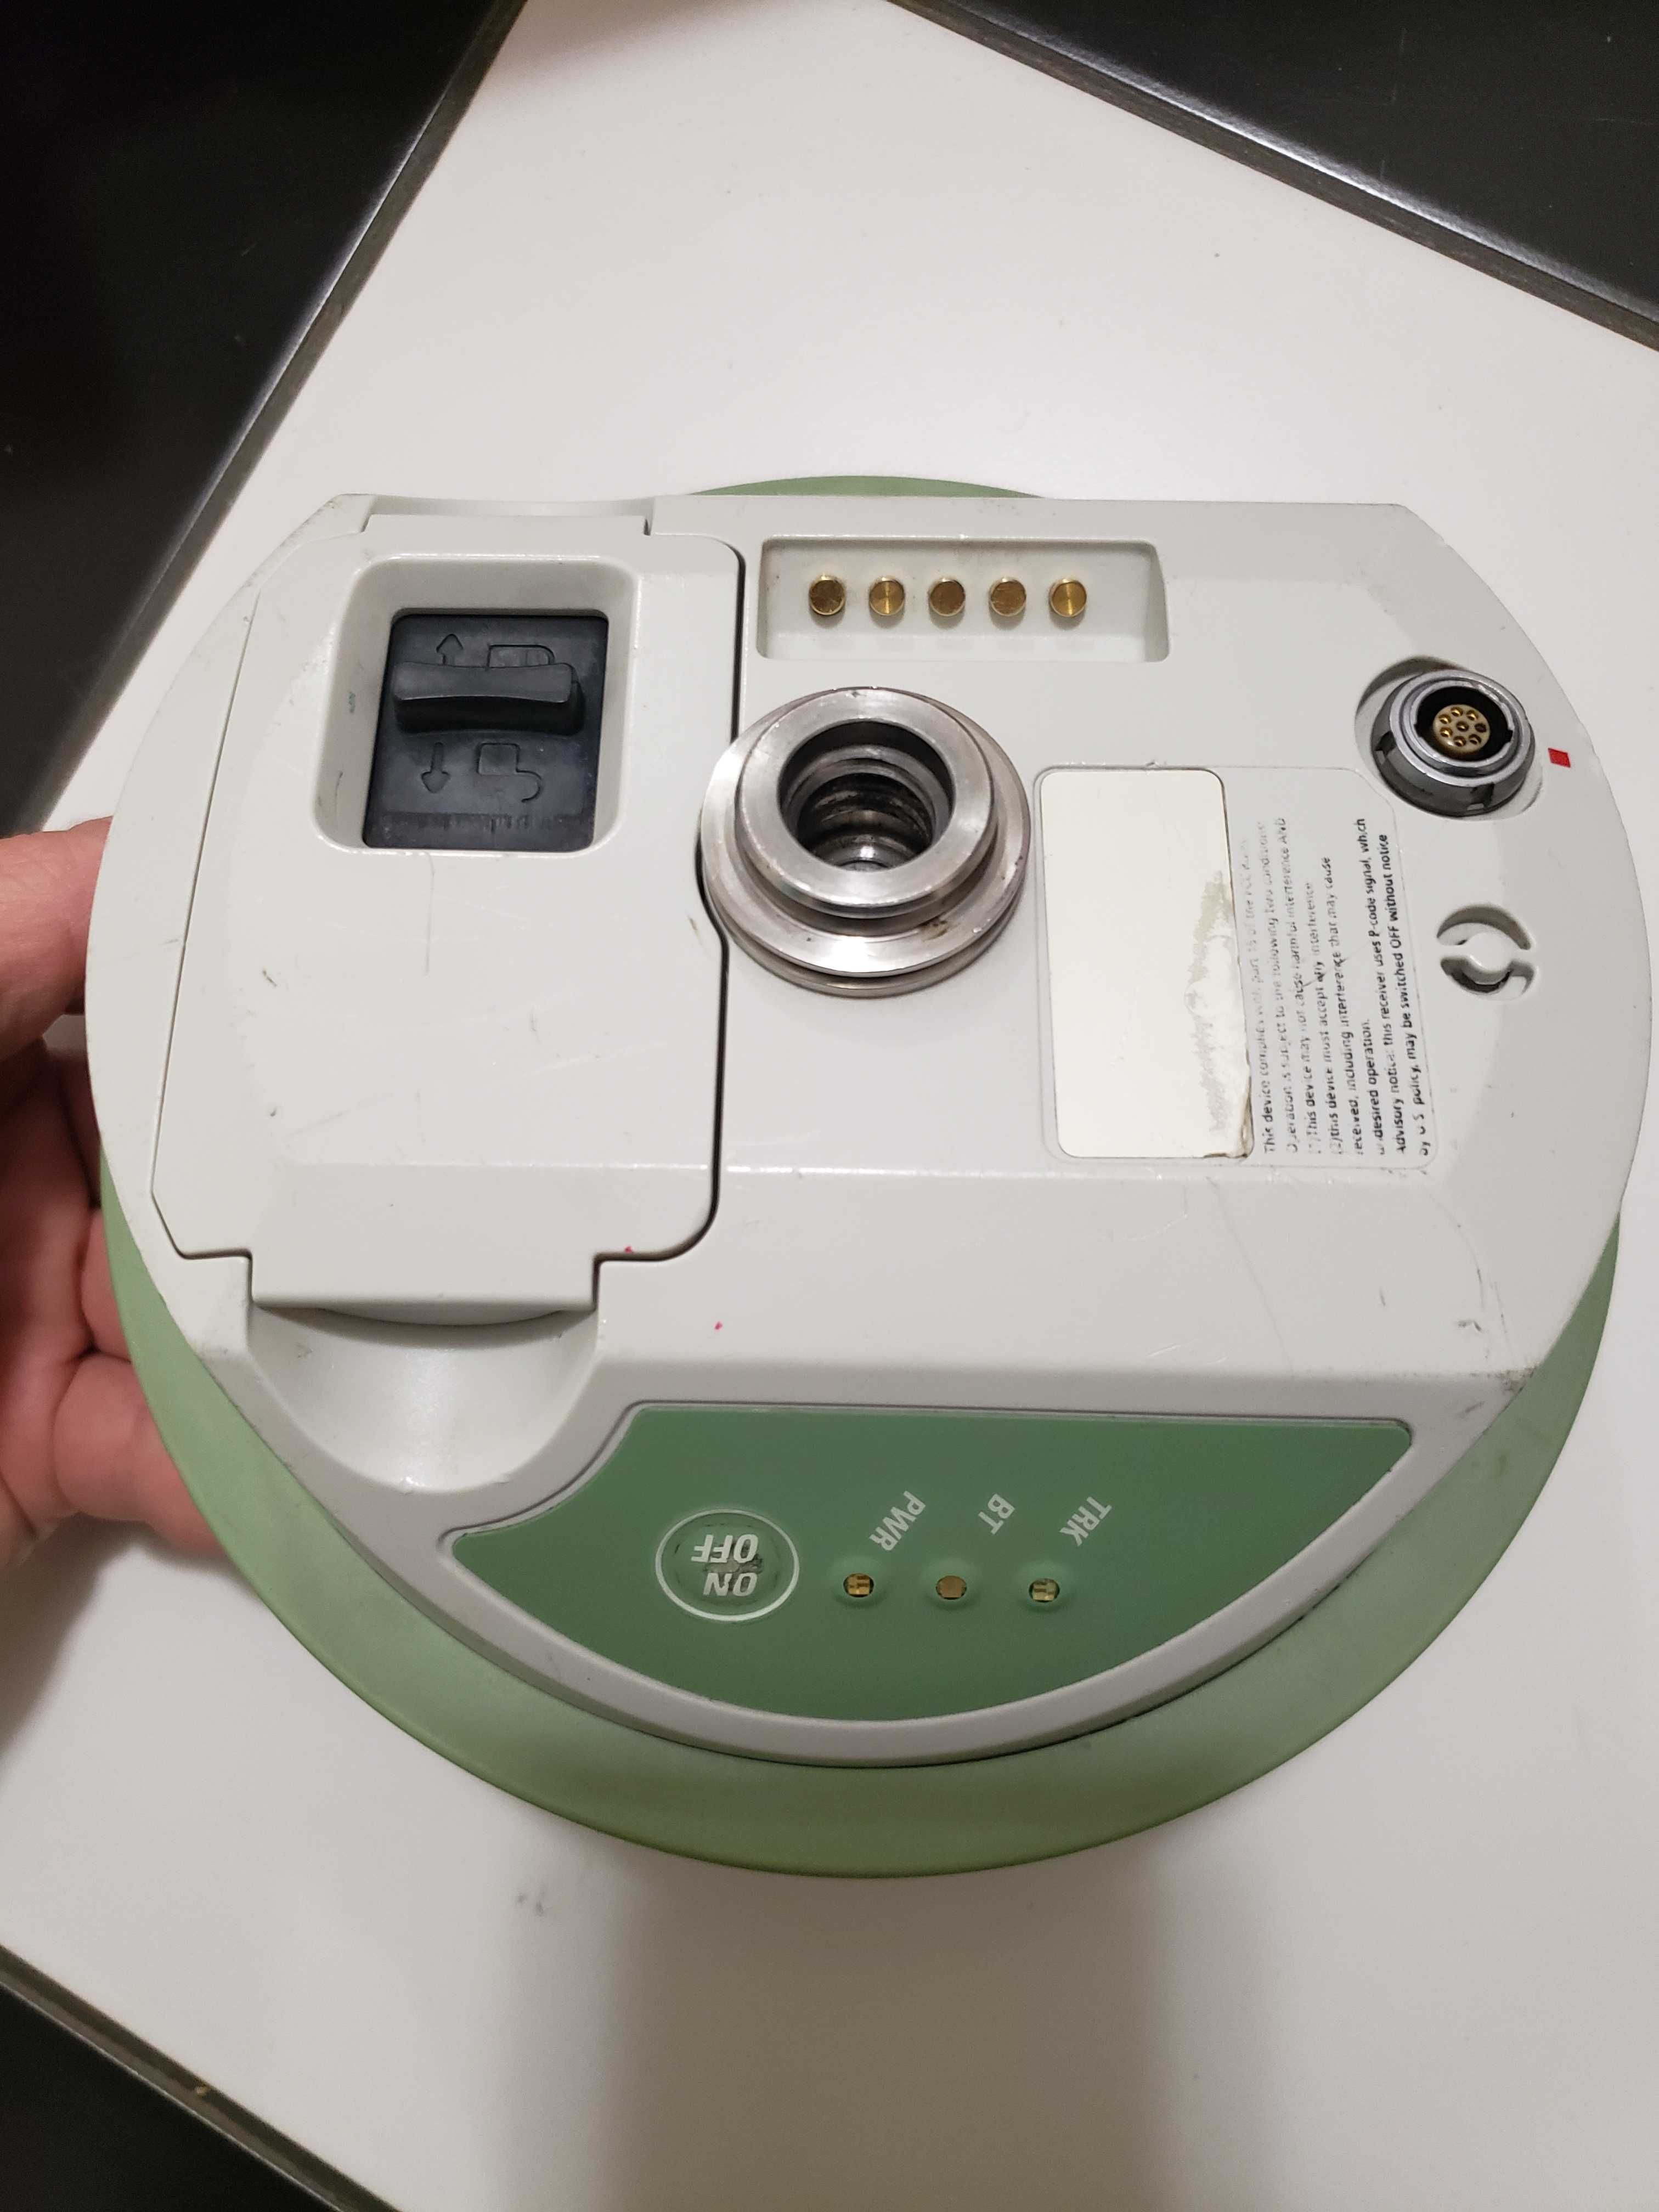 GPS Leica 1200, Leica RX1200 + ATC1200